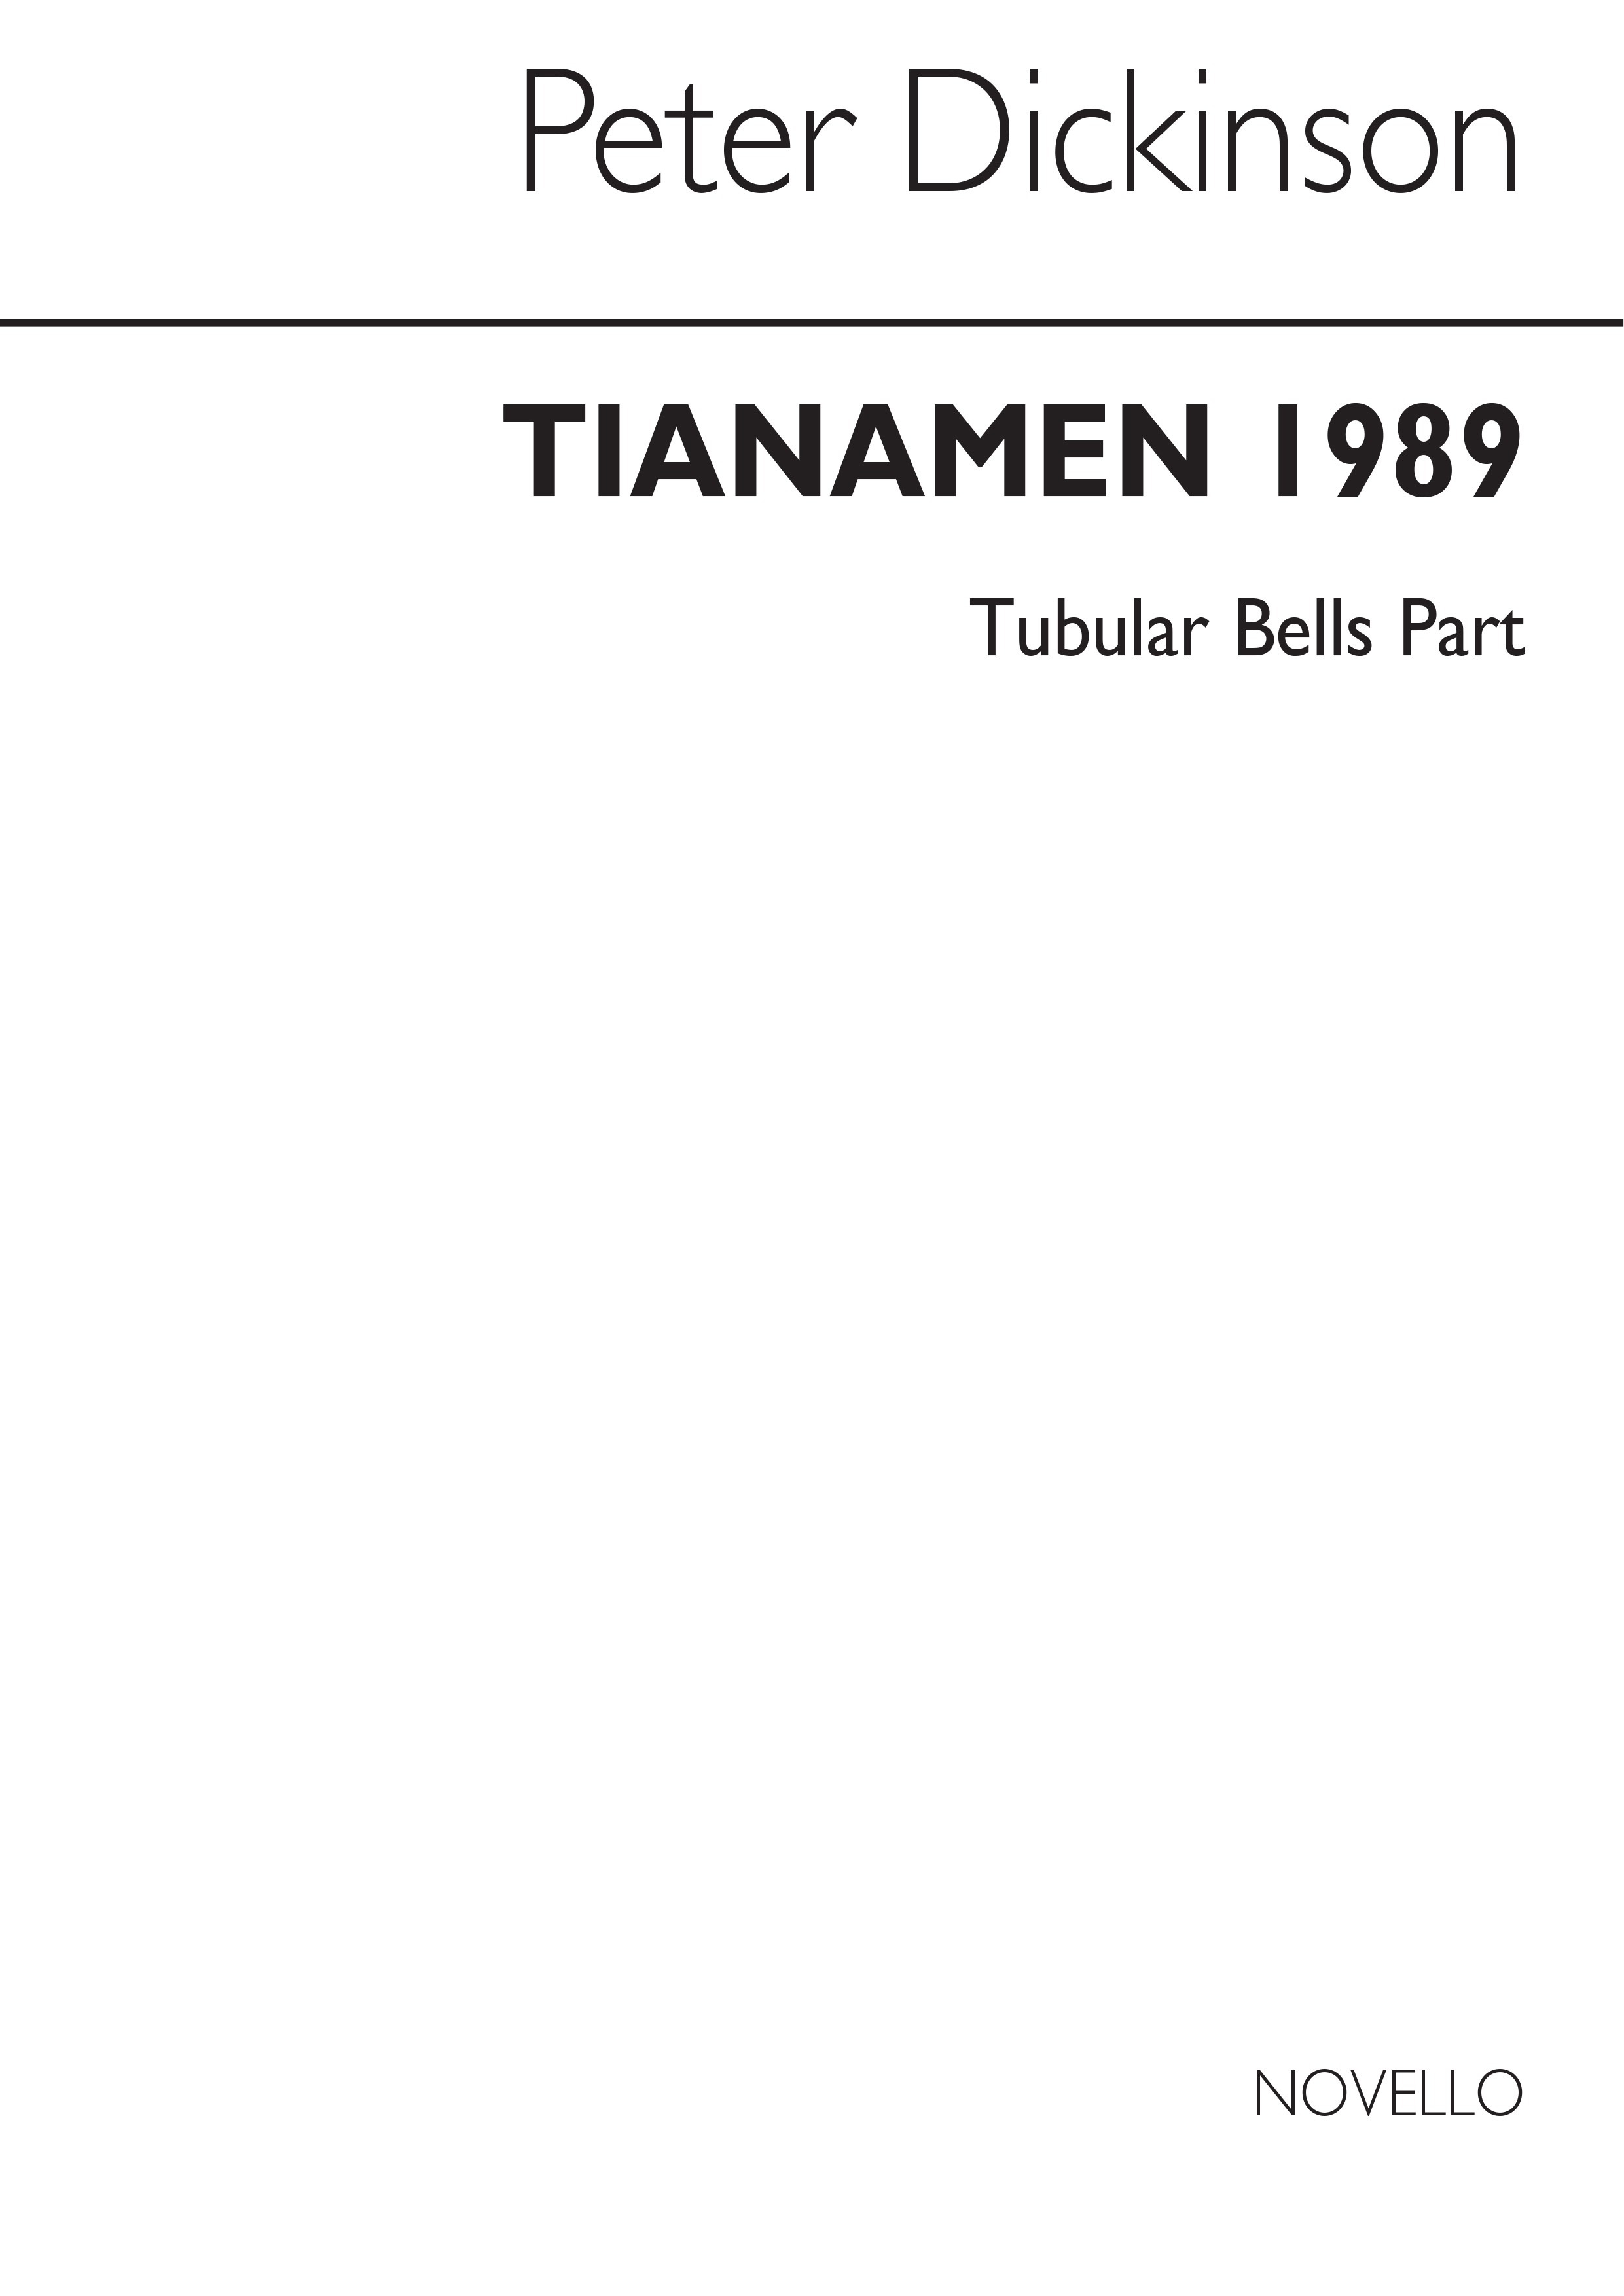 Dickinson, P Tiananmen 1989 Tubular Bells Part